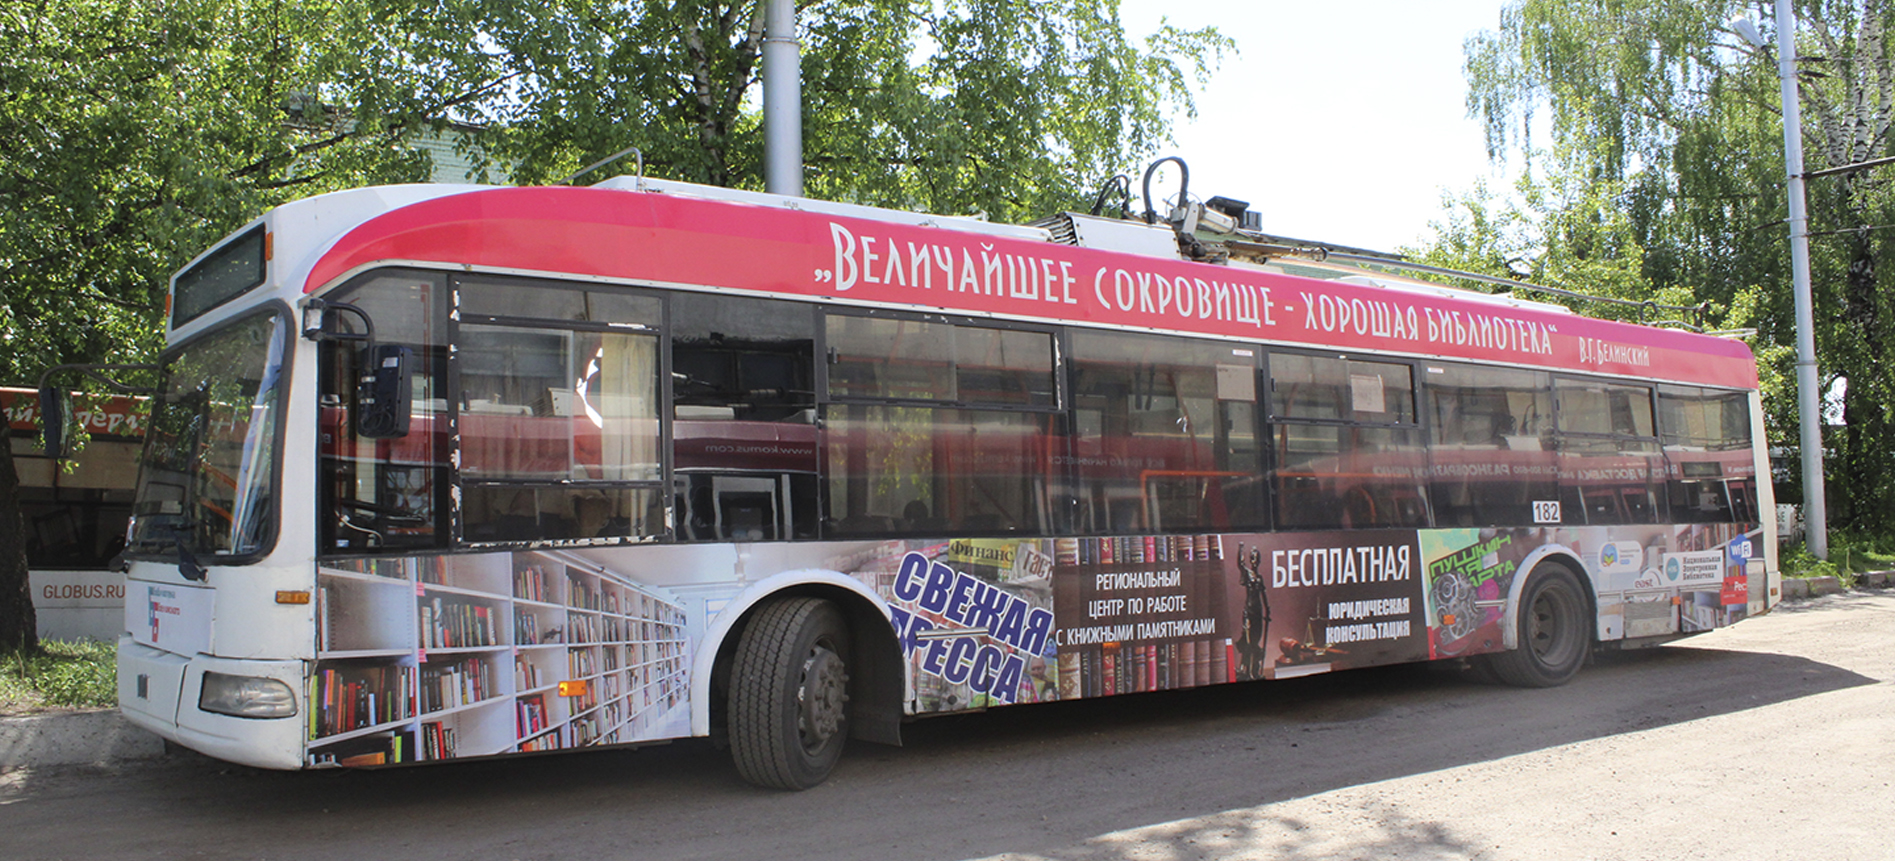 Троллейбус с брендом «Белинки» в Калуге